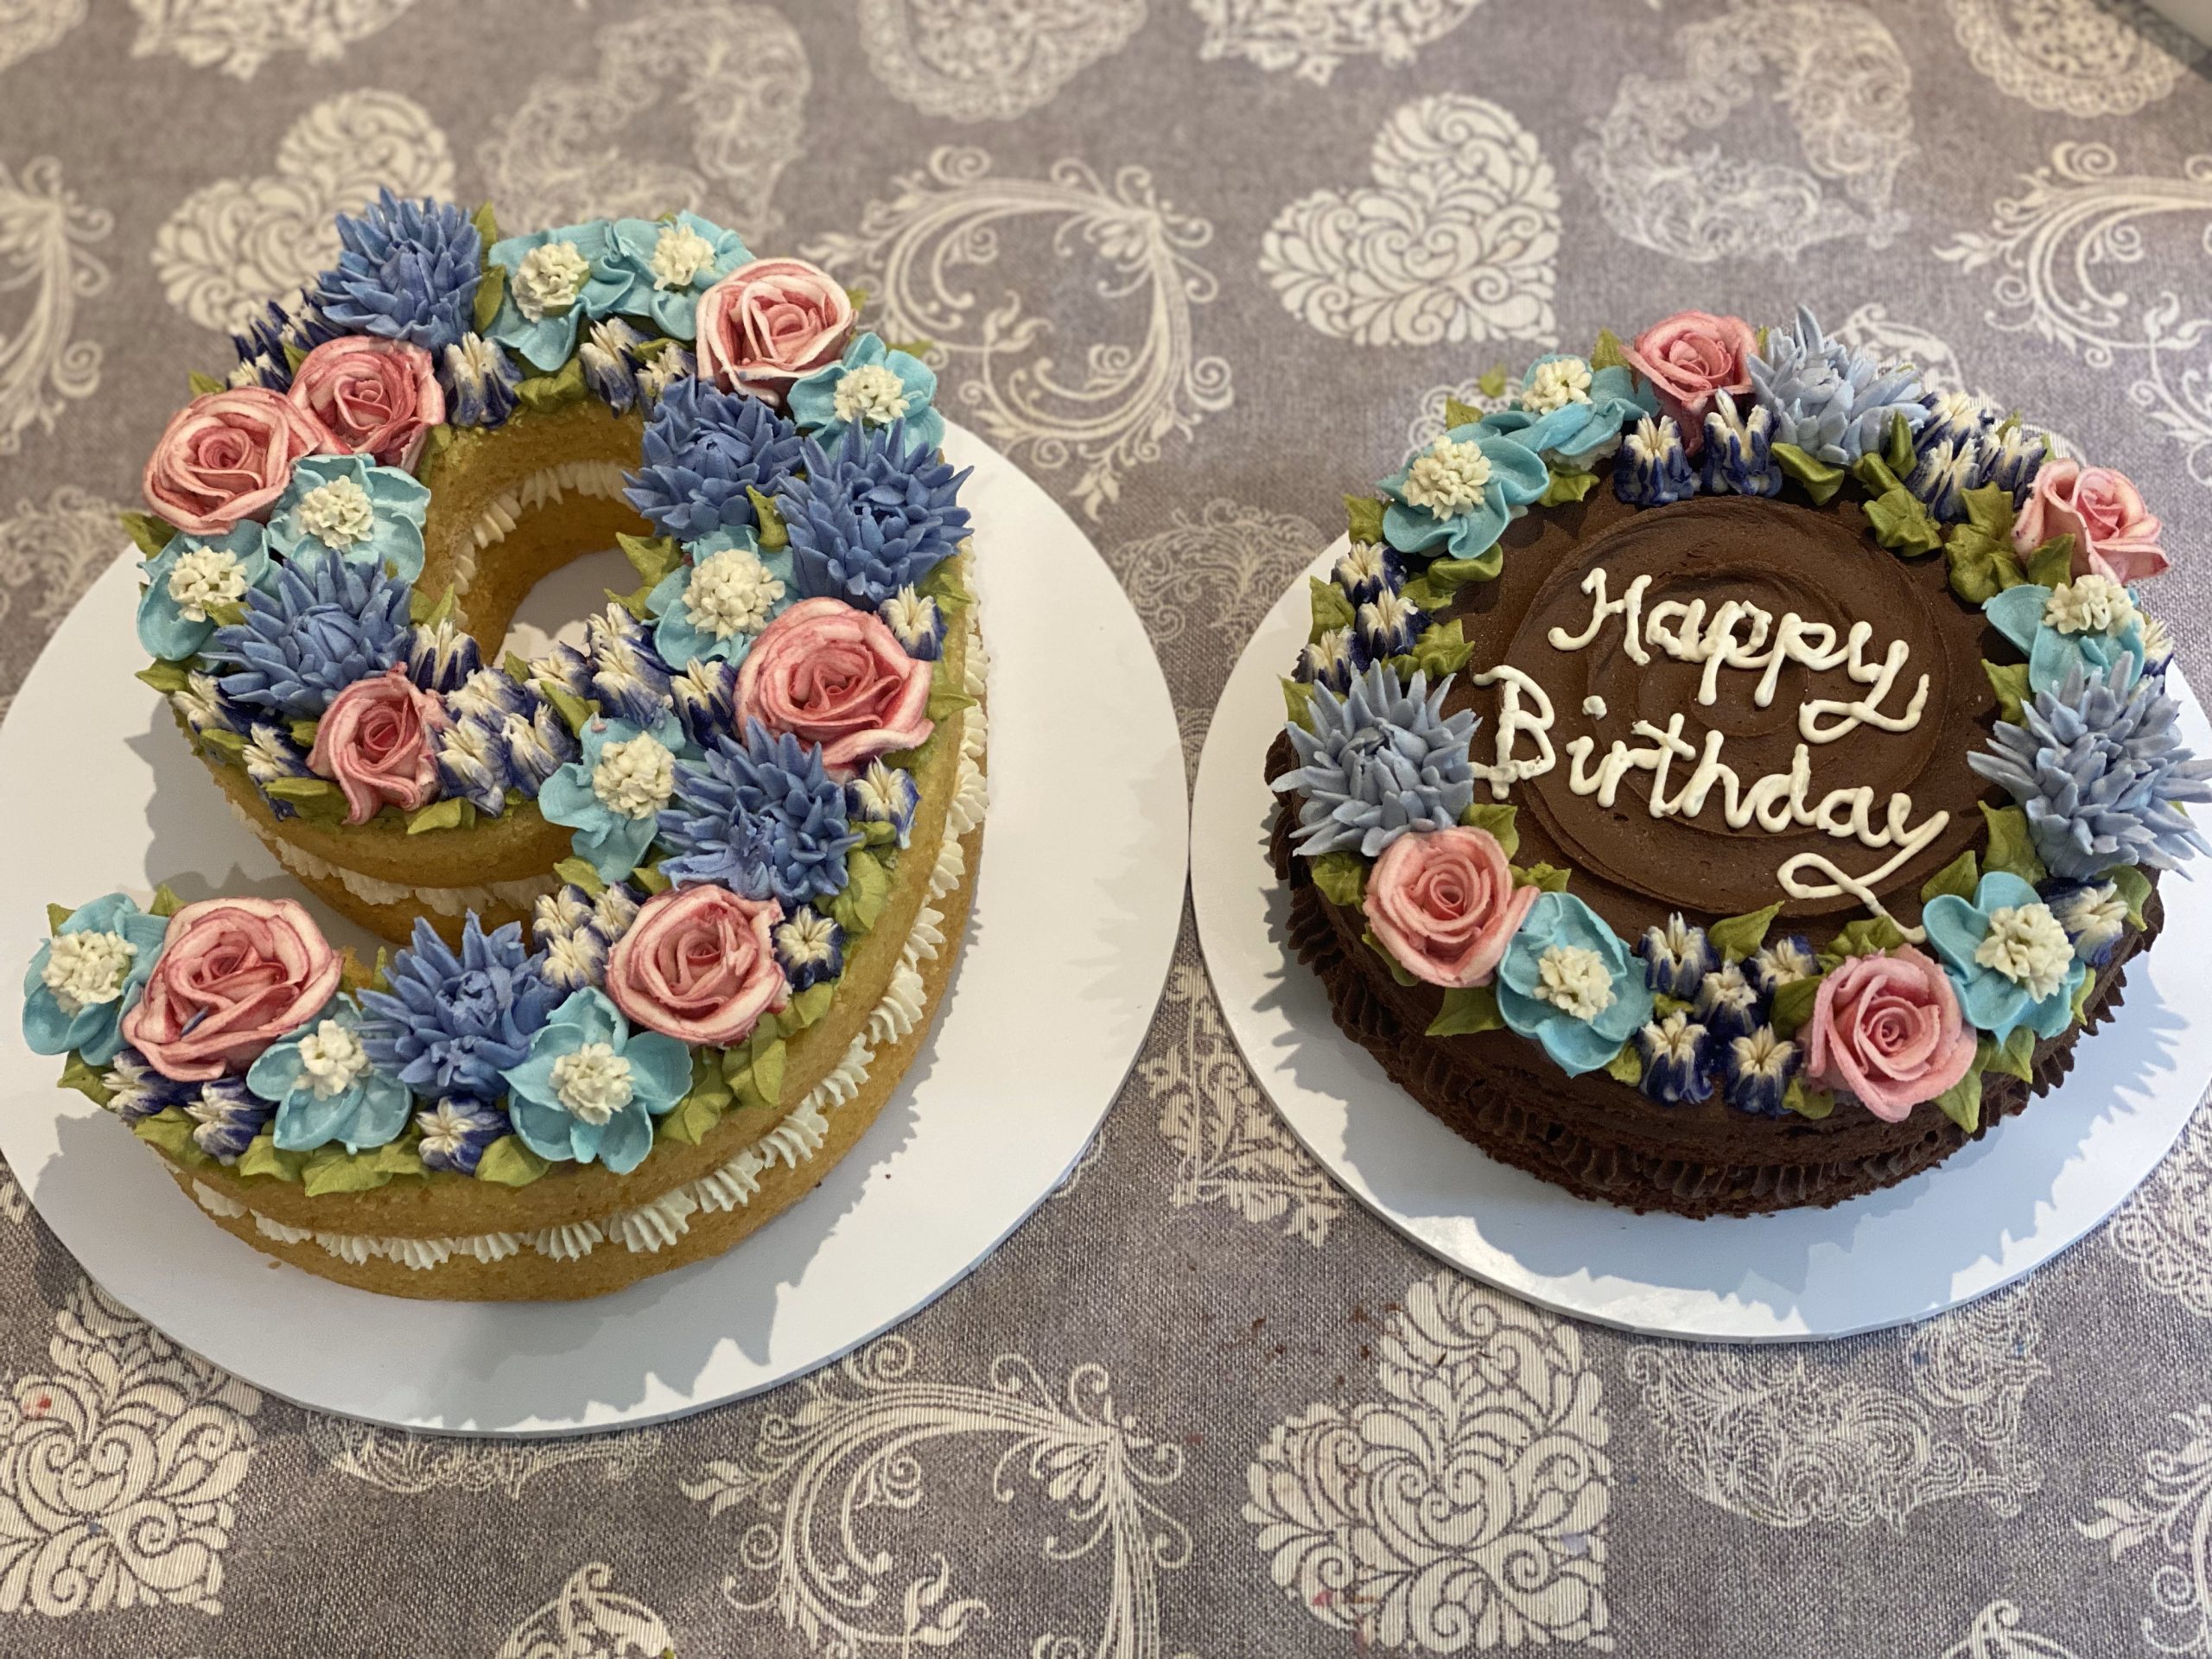 A 90 celebration cake